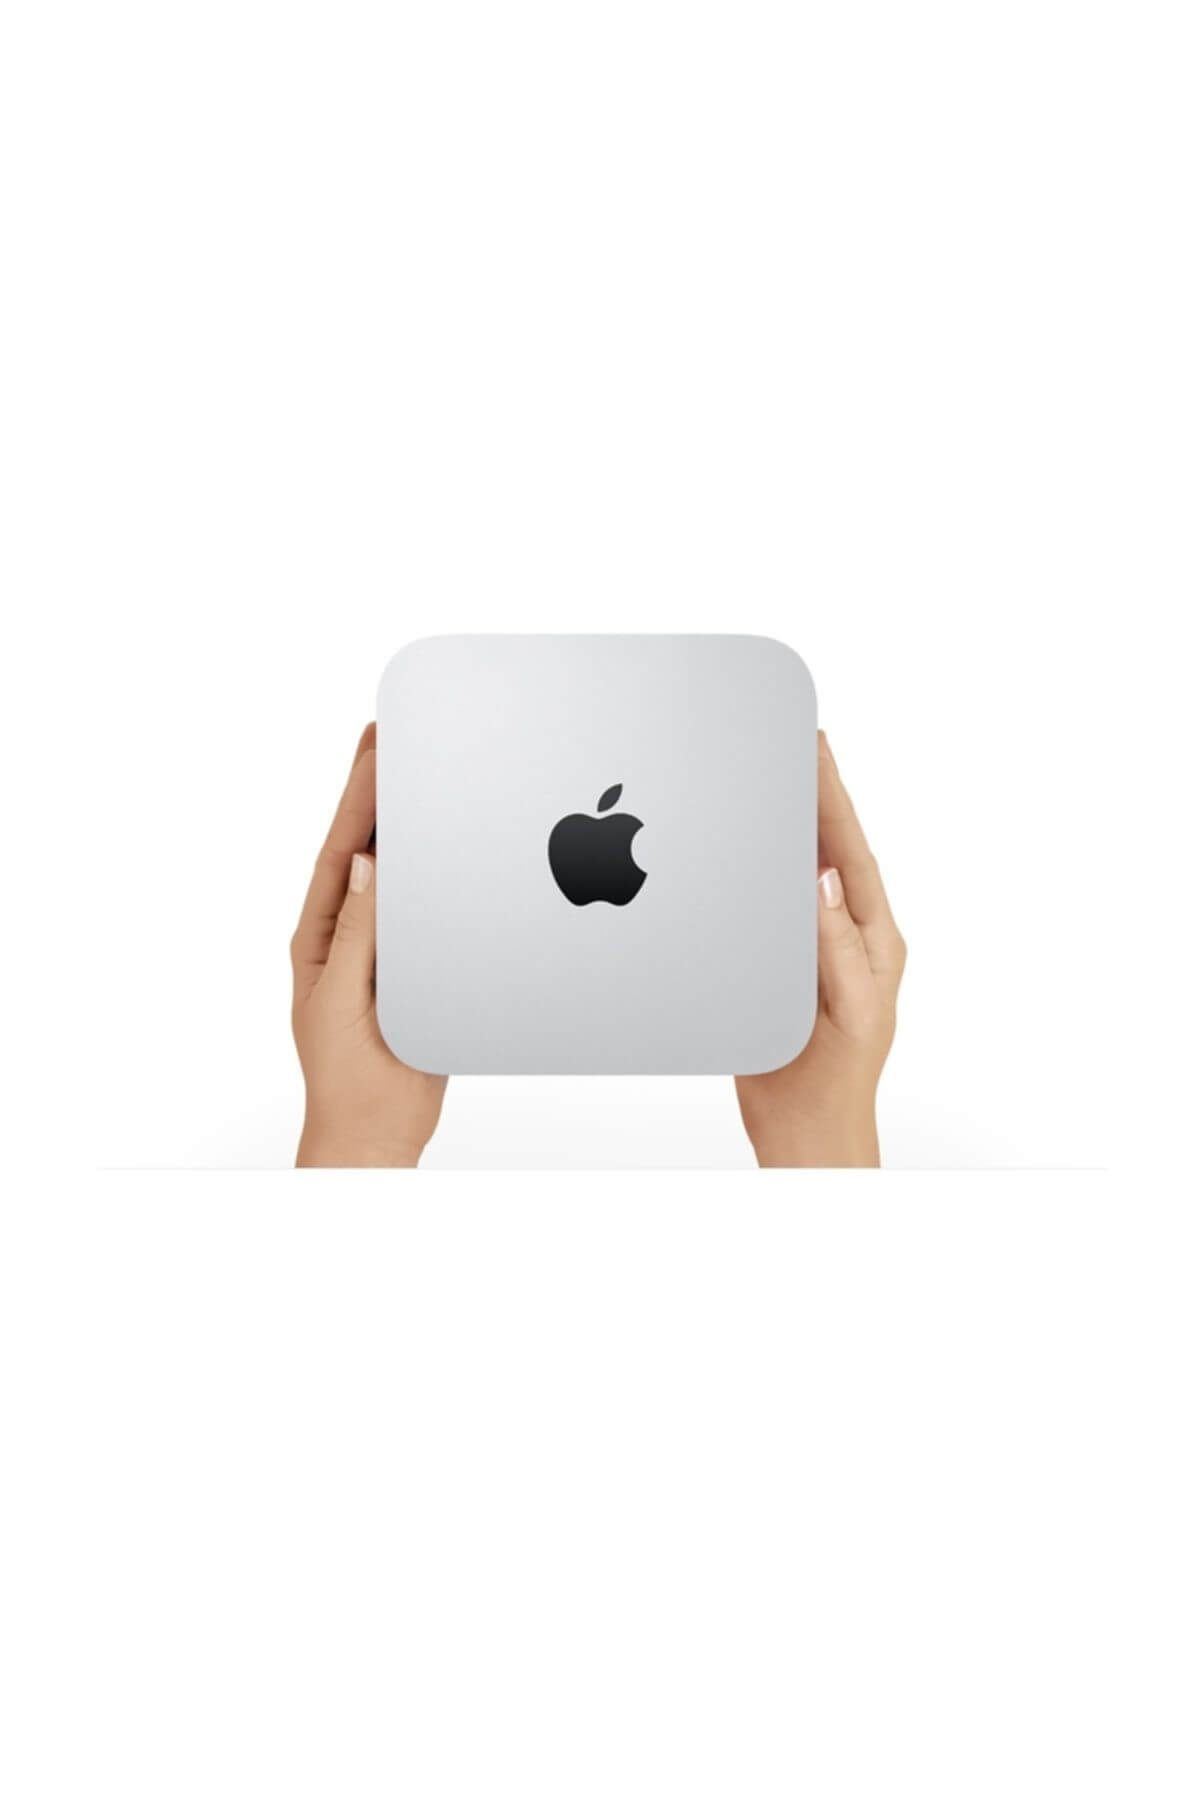 Apple Mac Mini Intel Core i5 1.4GHz 4GB 500GB Mini Masaüstü Bilgisayar MGEM2TU/A